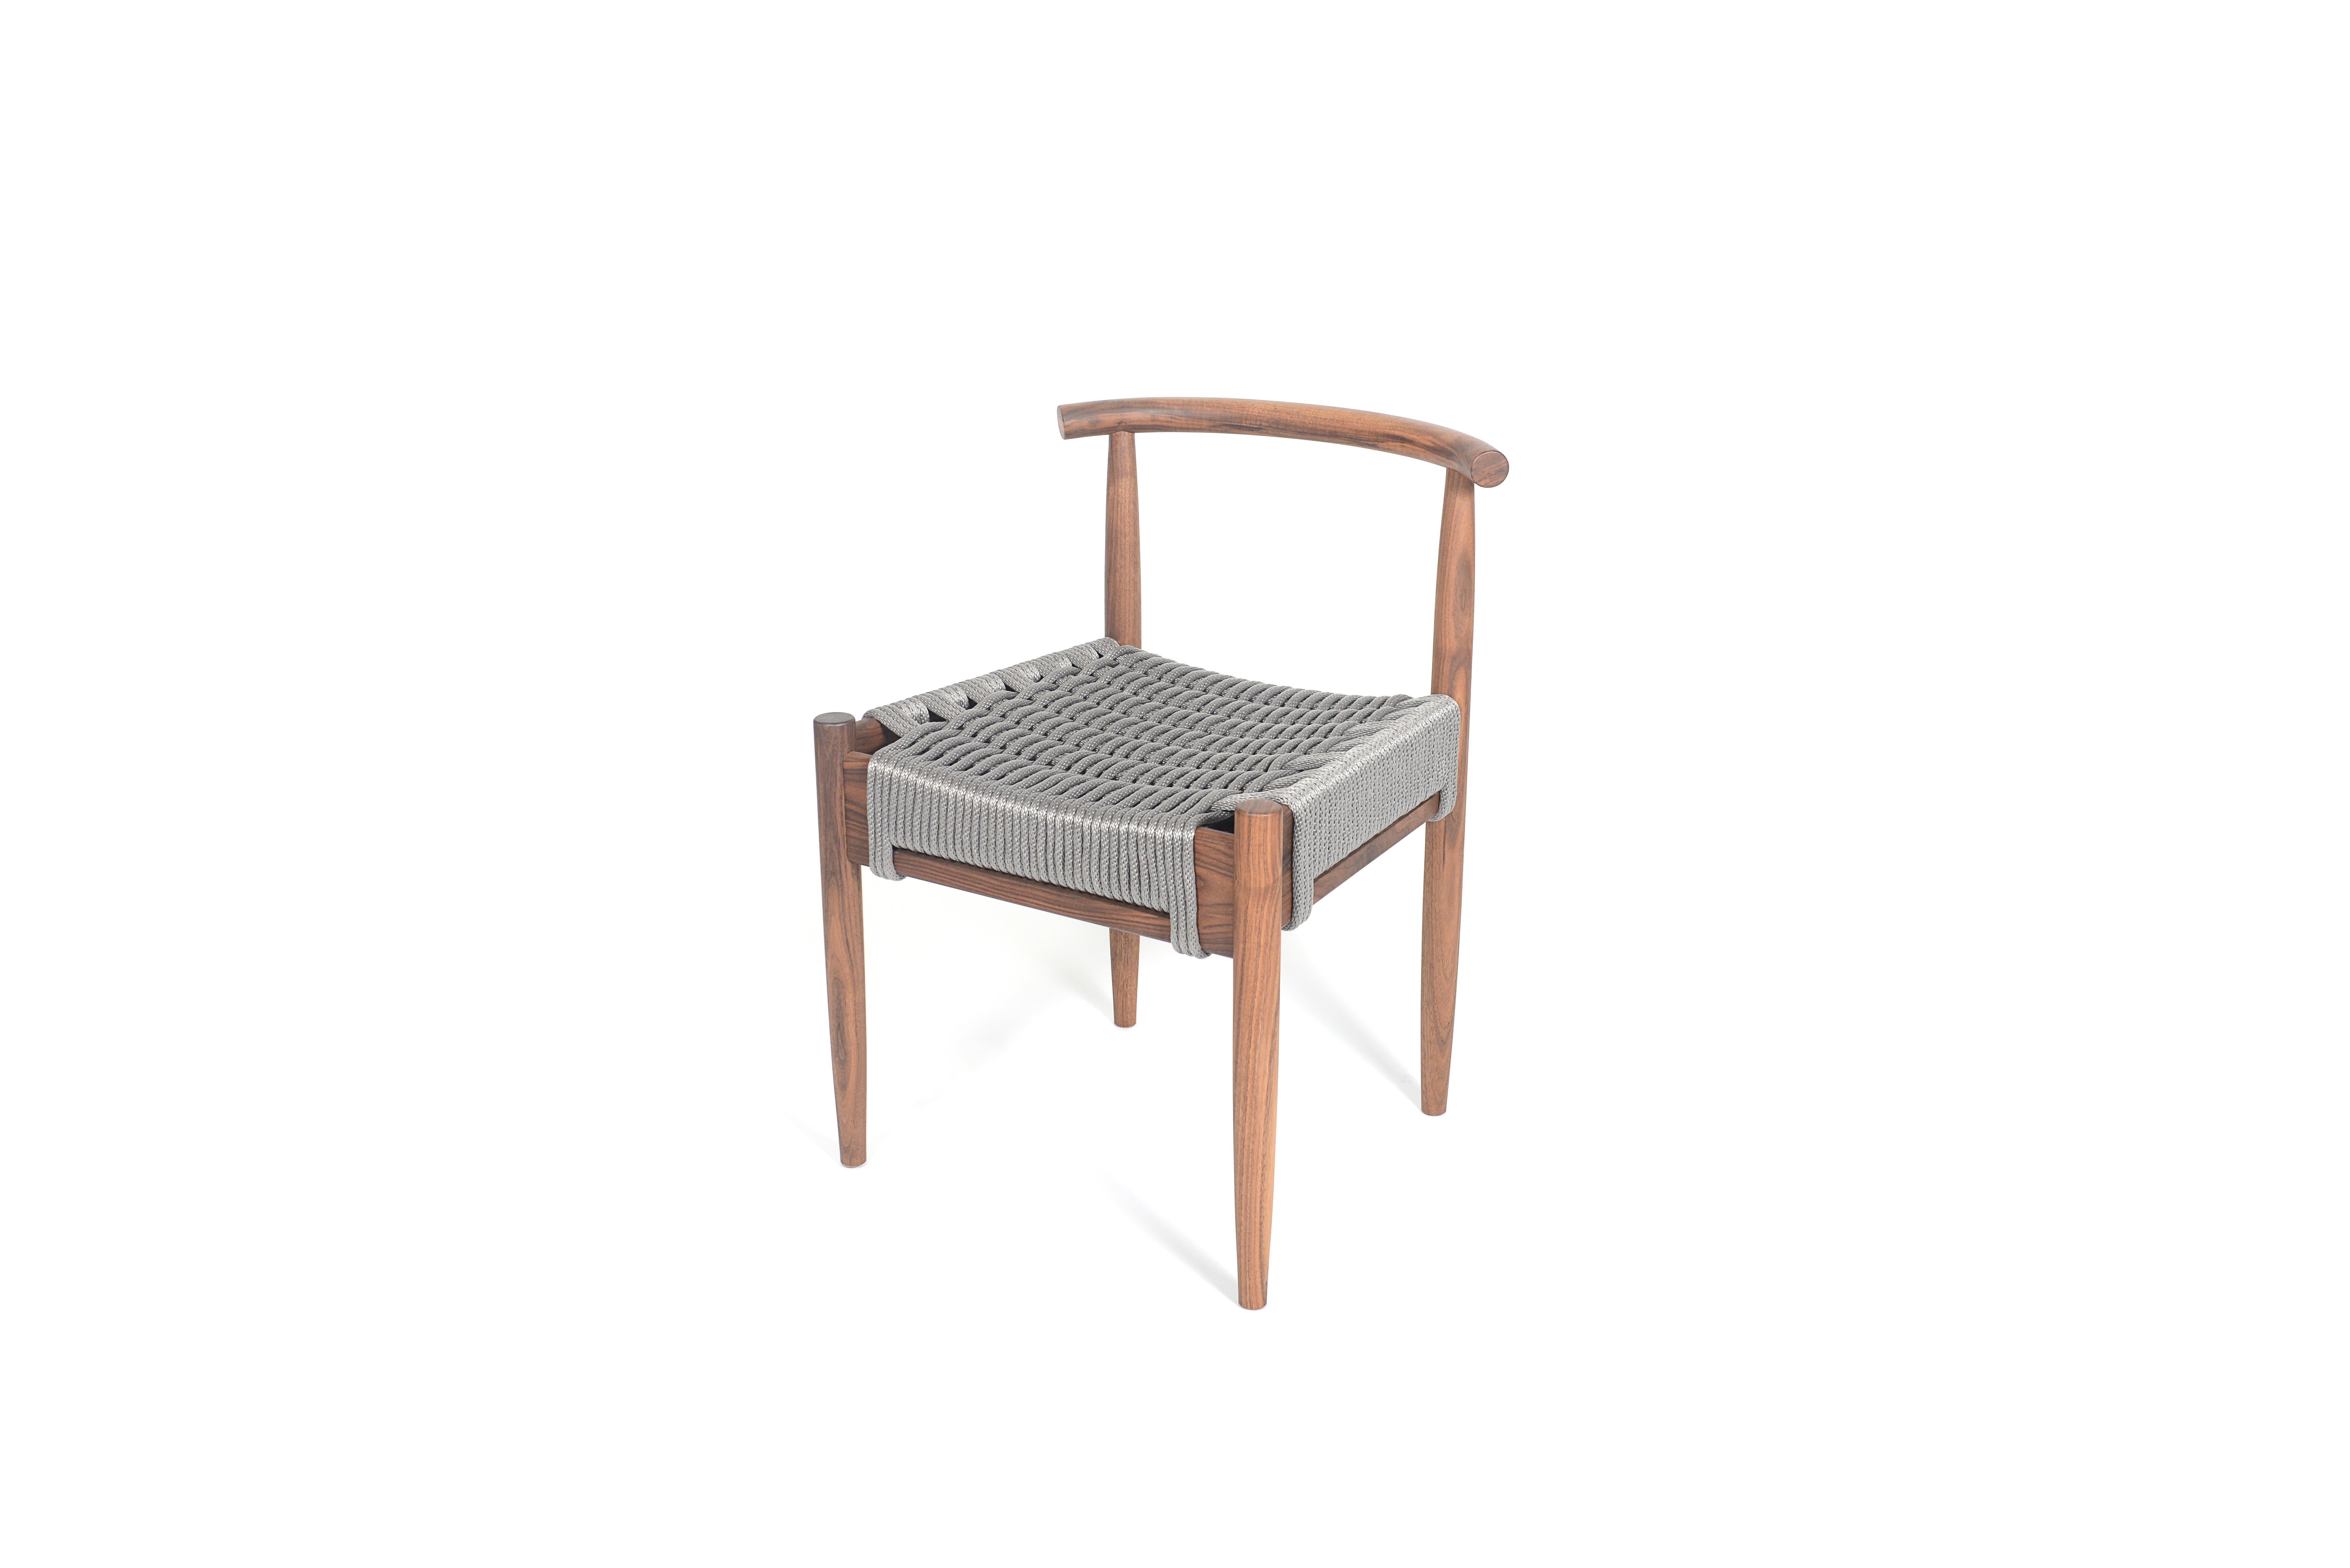 La chaise Harbor de Phloem Studio est une chaise d'appoint moderne et contemporaine en bois de noyer massif, fabriquée à la main sur commande, avec des pieds tournés, effilés et façonnés et un dossier tubulaire façonné à la main dans du bois dur.